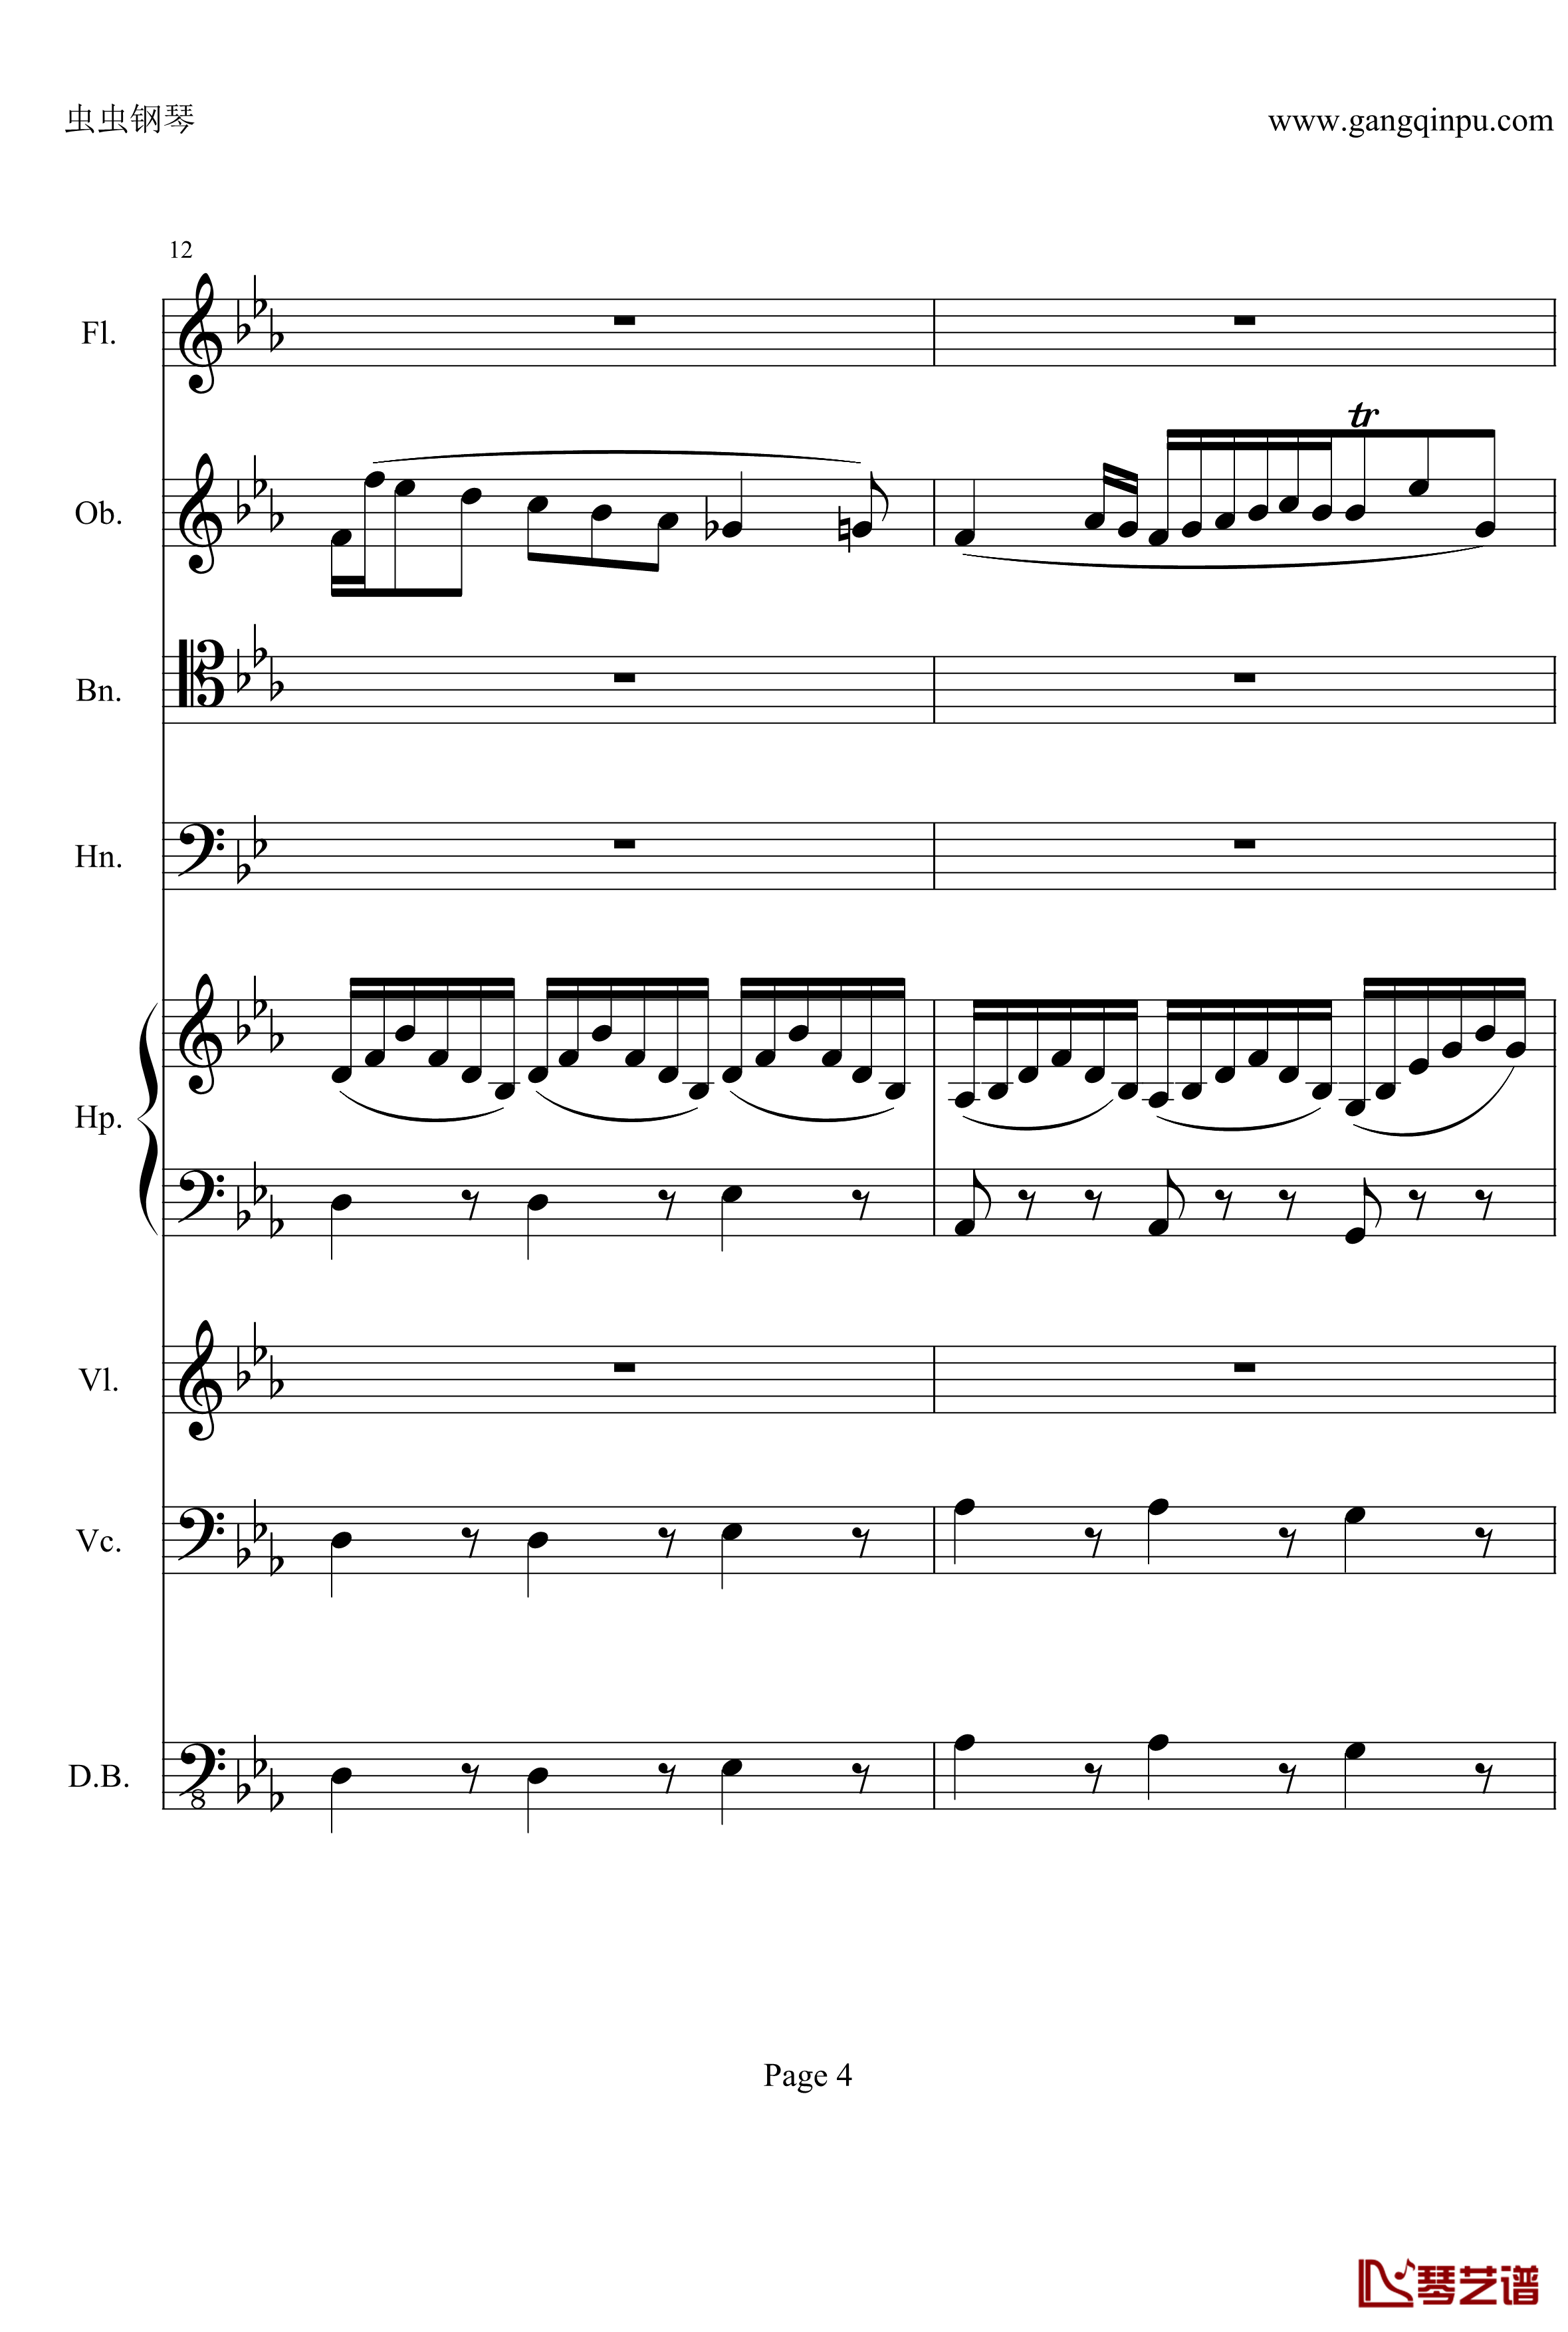 奏鸣曲之交响钢琴谱-第25首-Ⅱ-贝多芬-beethoven4